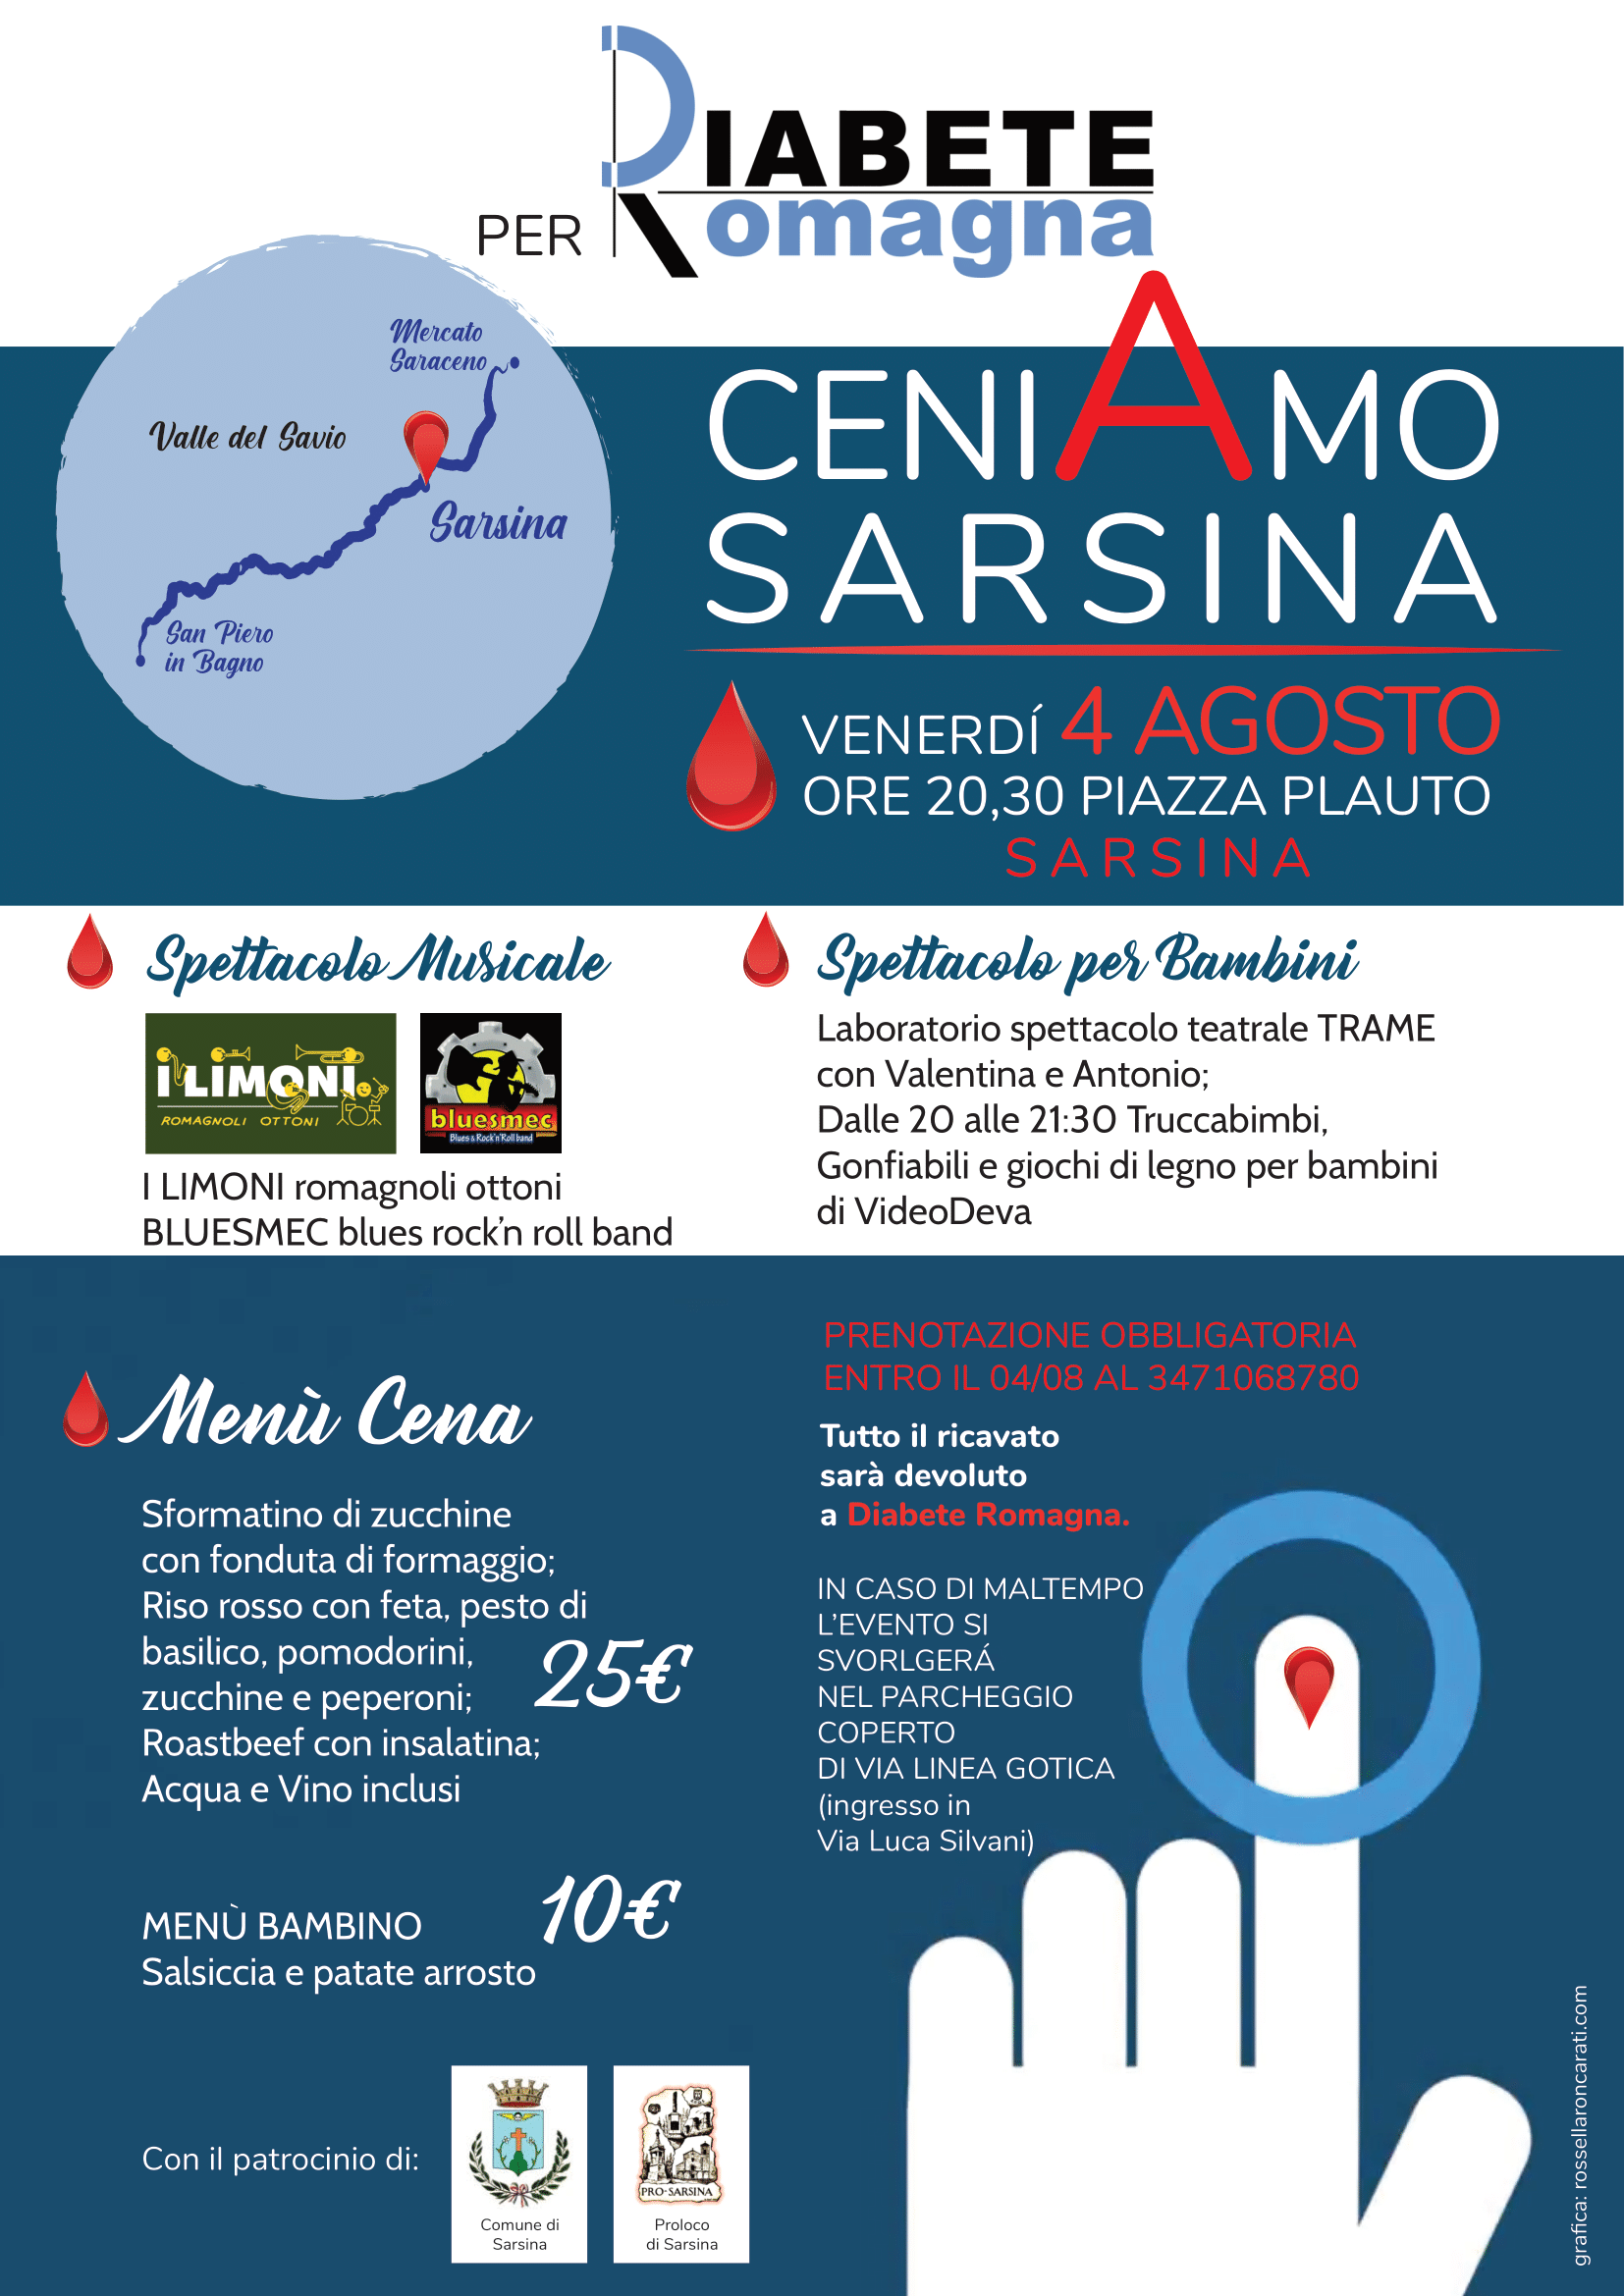 Venerdì 4 Agosto CeniAmo Sarsina, Serata Di Solidarietà A Favore Di Diabete Romagna In Piazza Plauto